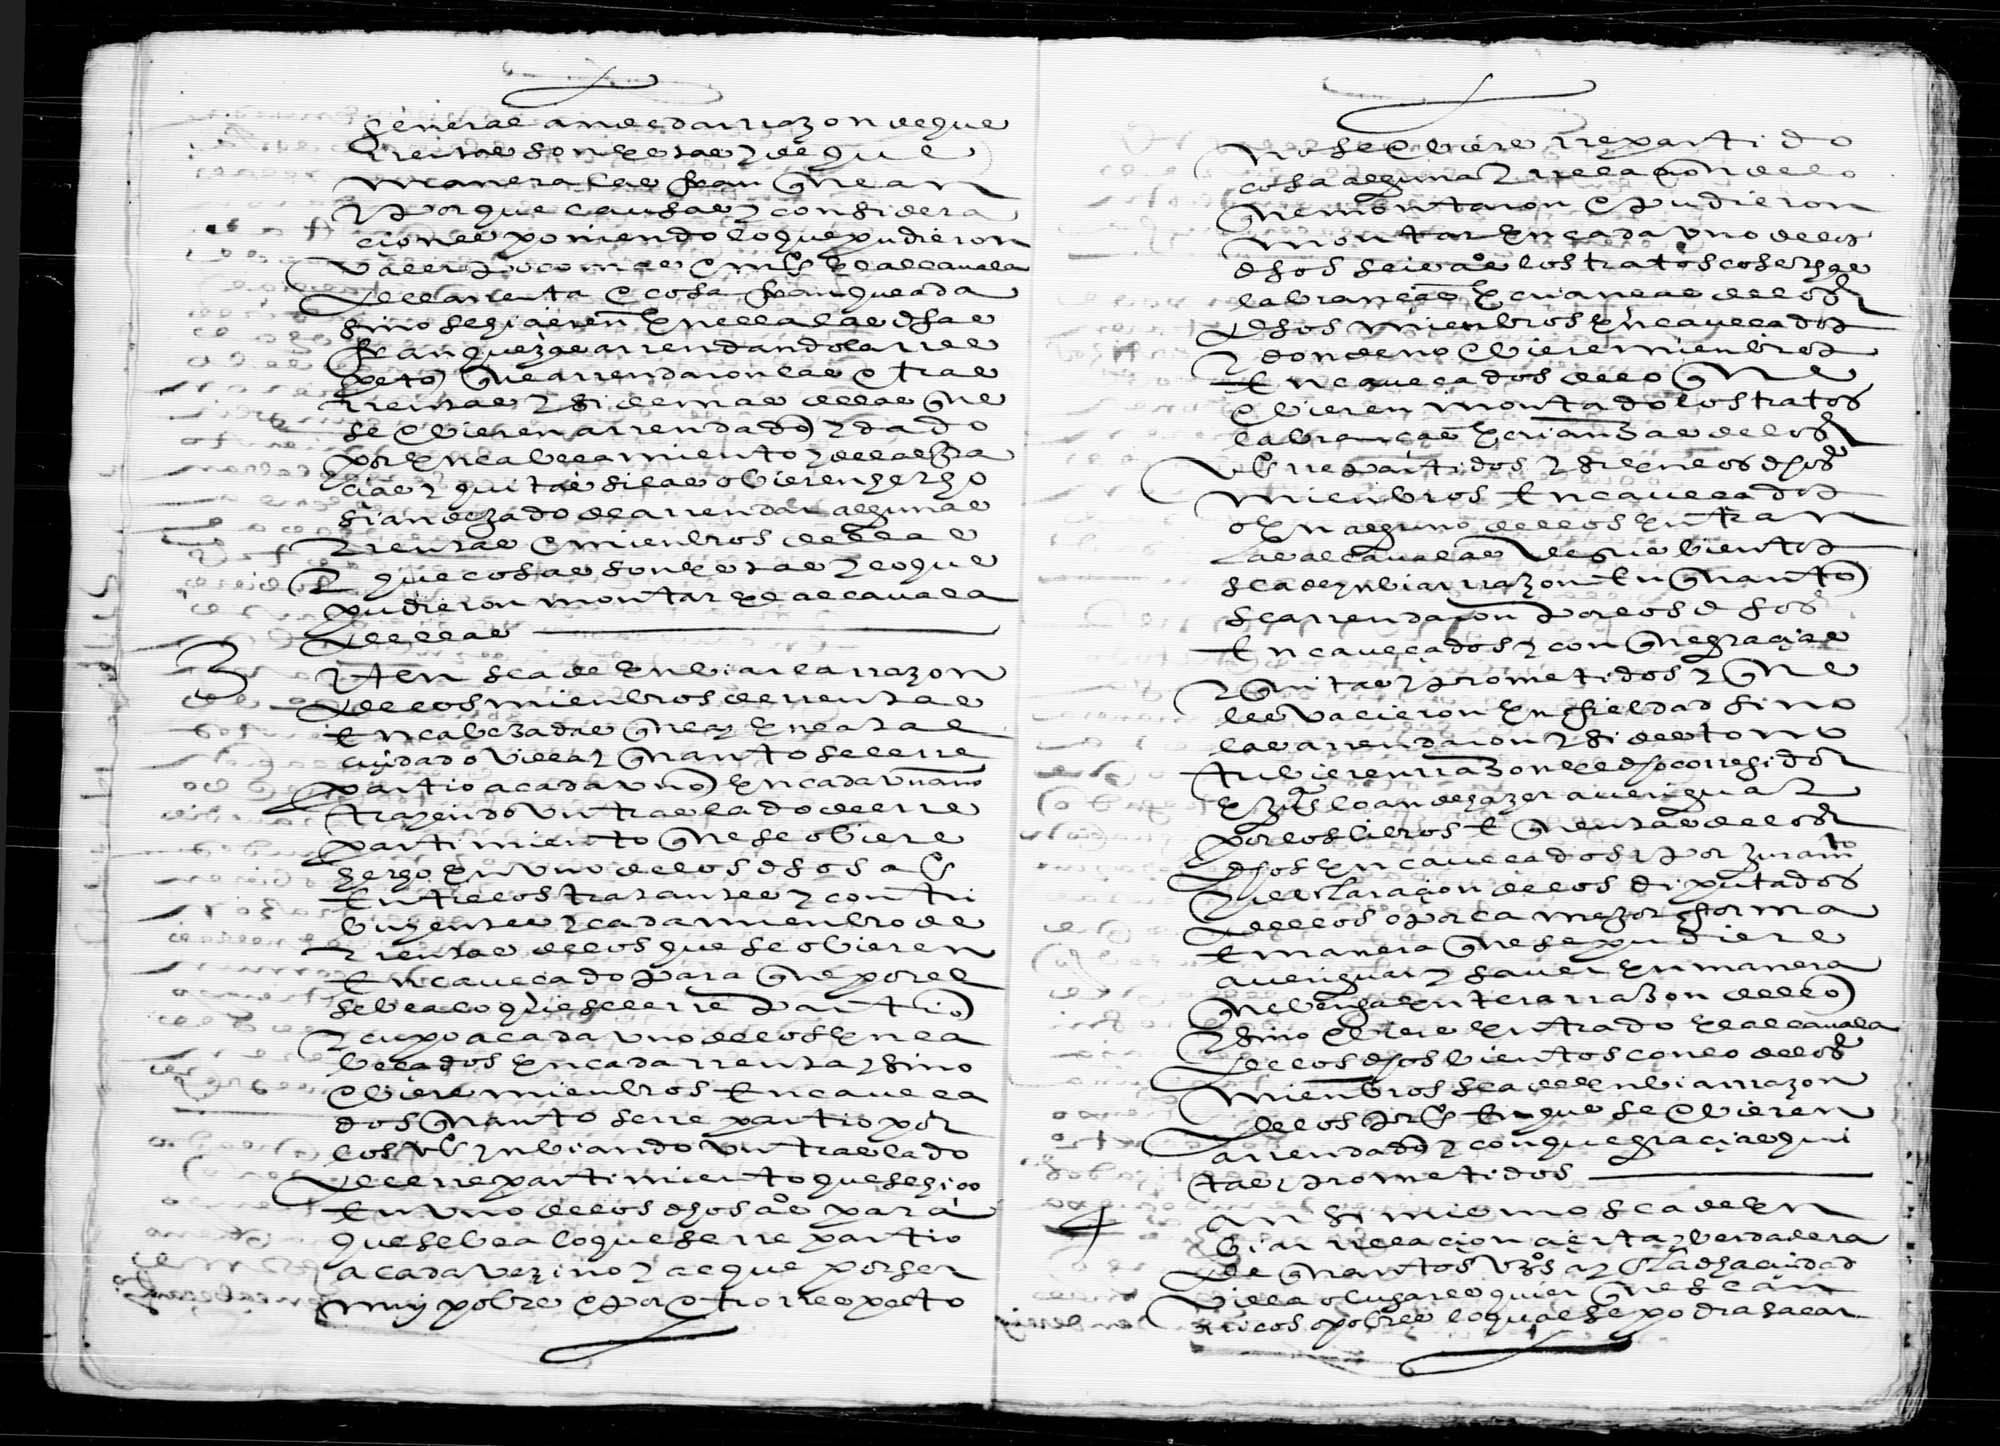 Averiguación de las rentas reales de Lorca y su jurisdicción durante el periodo 1590 a 1596